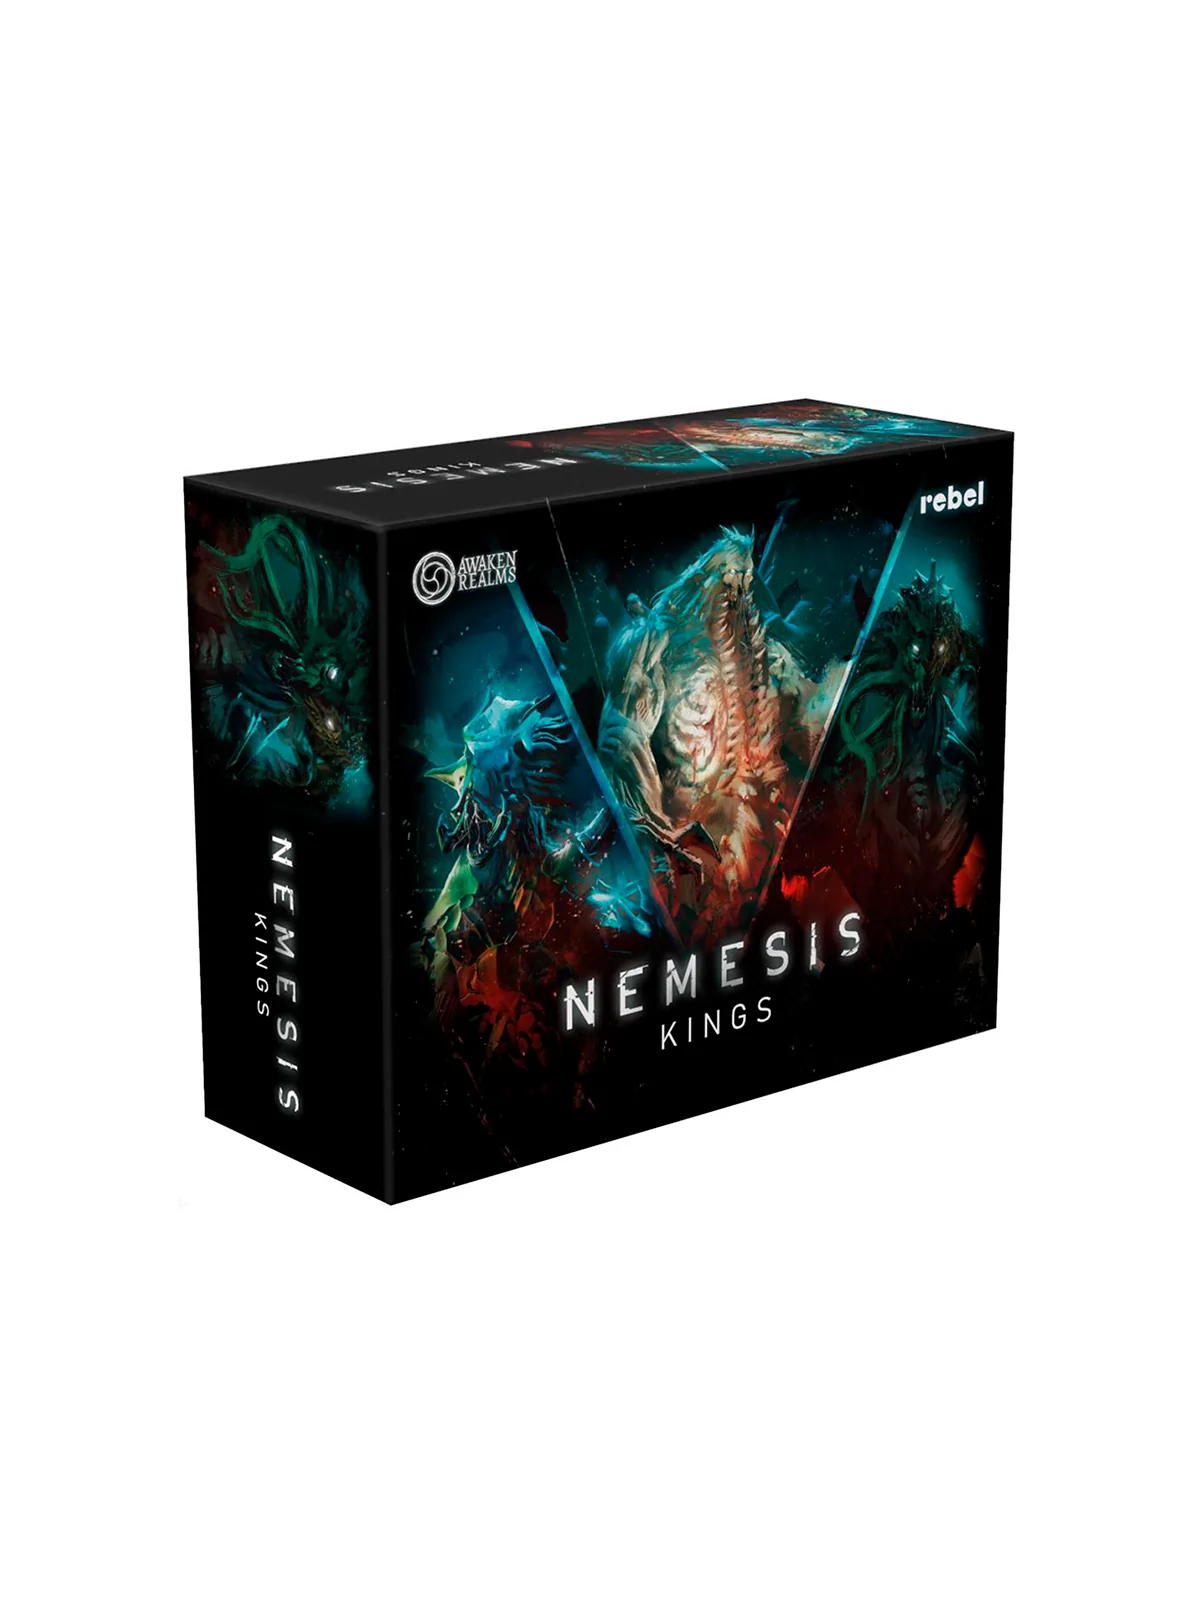 Comprar Nemesis: Alien Kings barato al mejor precio 44,99 € de Rebel